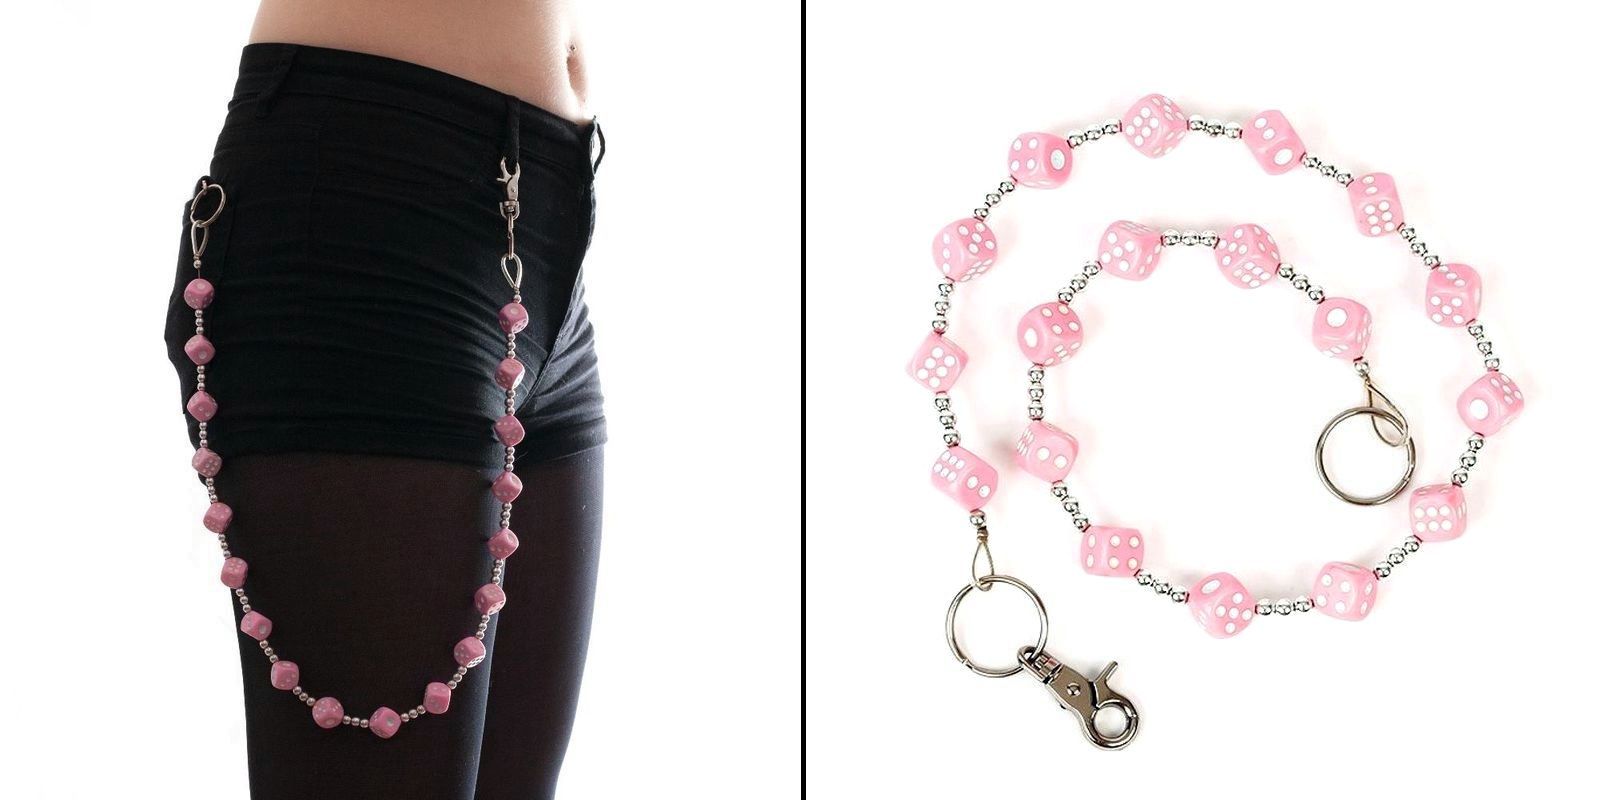 Řetěz na kalhoty s velkými růžovými kostkami